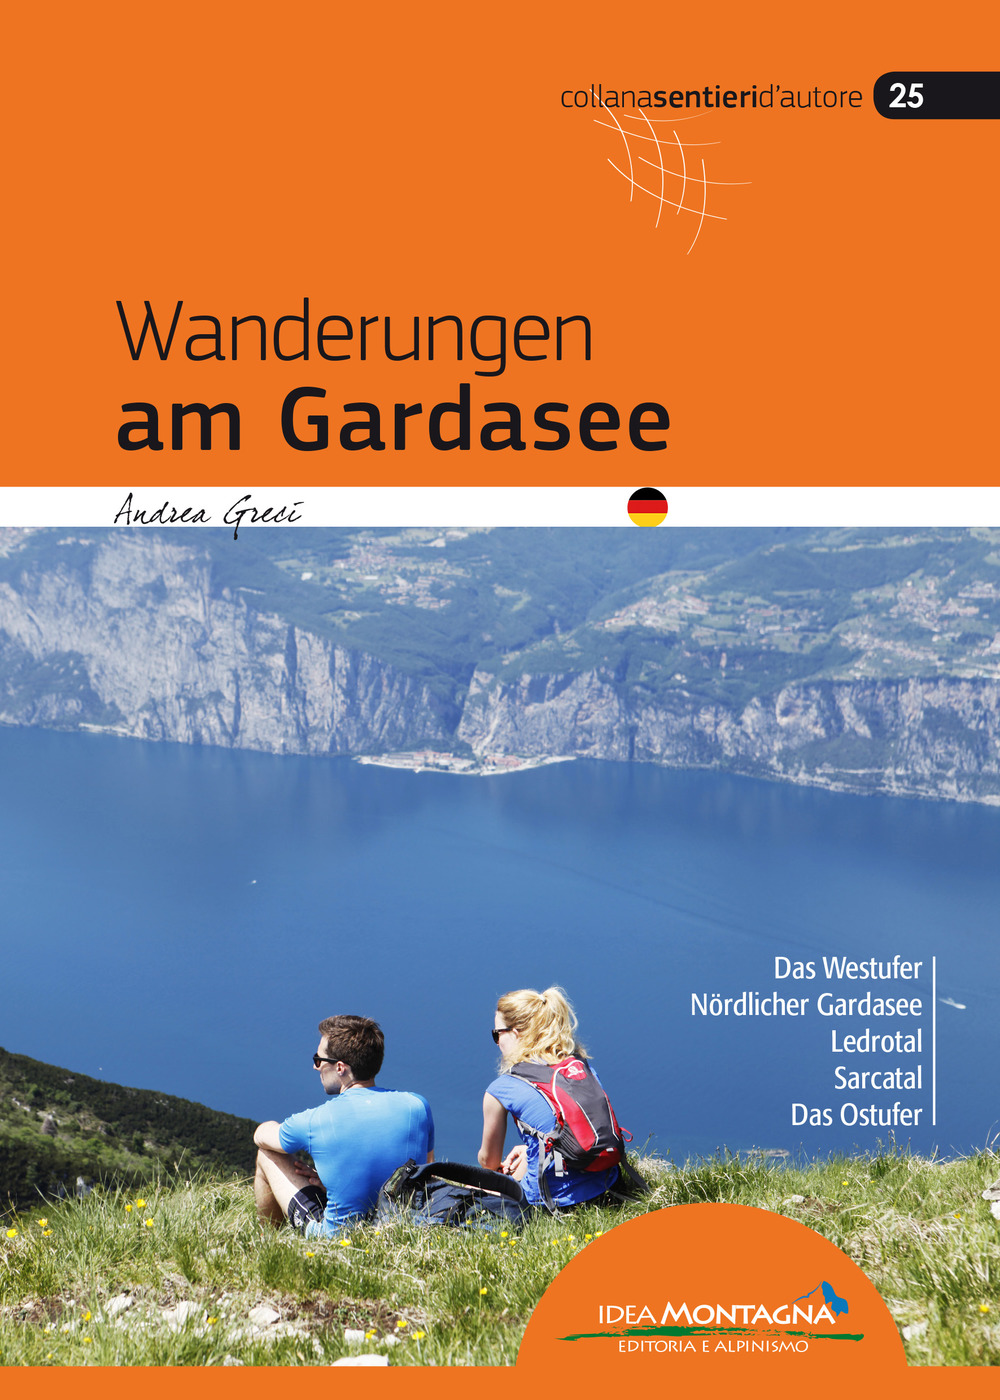 Libri Andrea Greci - Wanderungen Am Gardasee NUOVO SIGILLATO, EDIZIONE DEL 12/02/2019 SUBITO DISPONIBILE